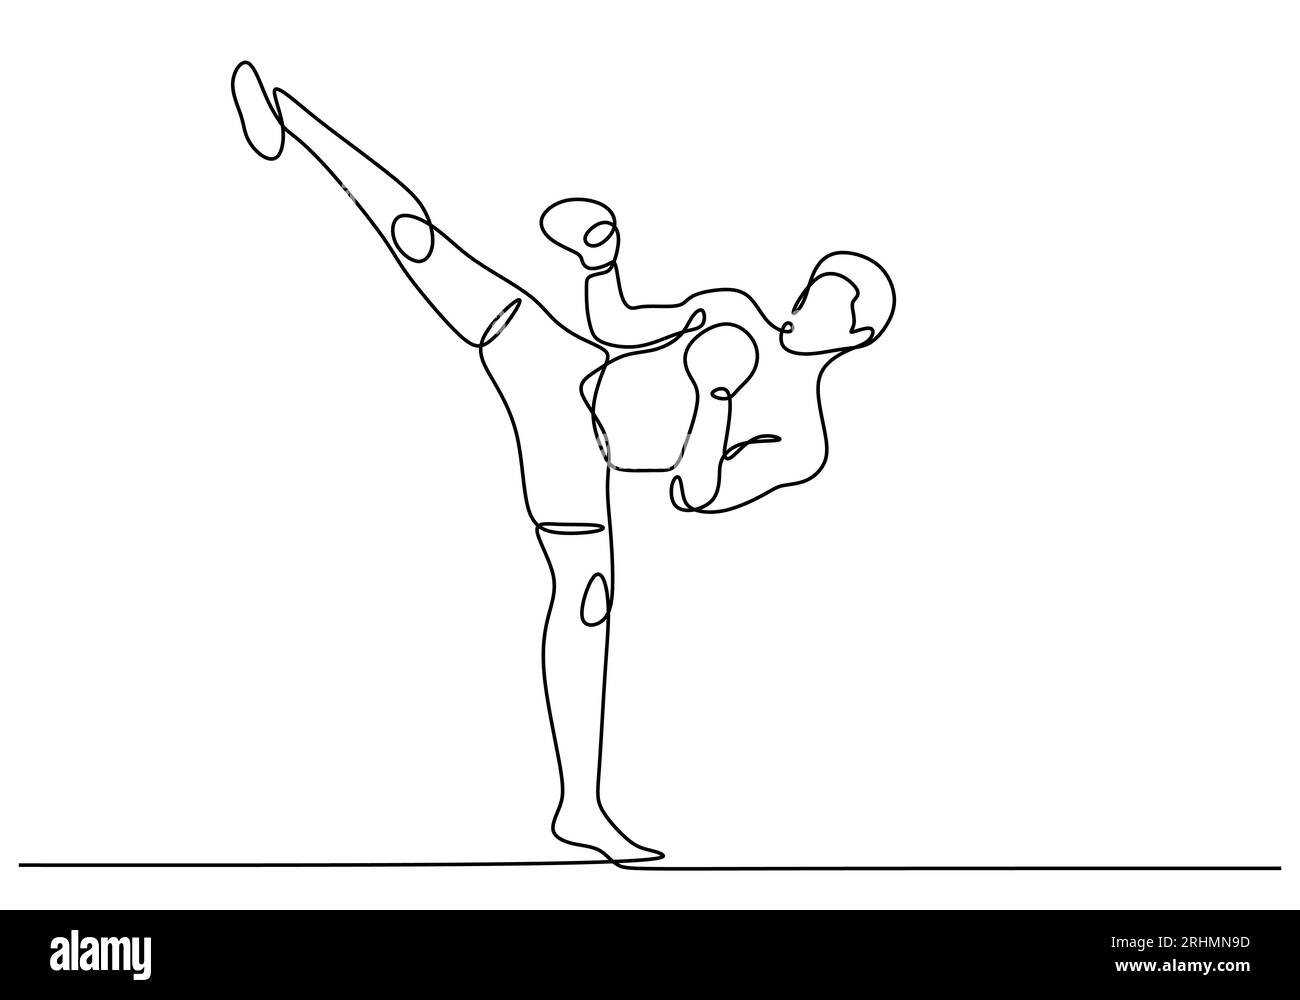 Dessin en ligne continu de kickboxing. Illustration vectorielle d'un exercice de coup de pied d'homme, thème de sport personnes faisant la formation d'activité de combat. Illustration de Vecteur